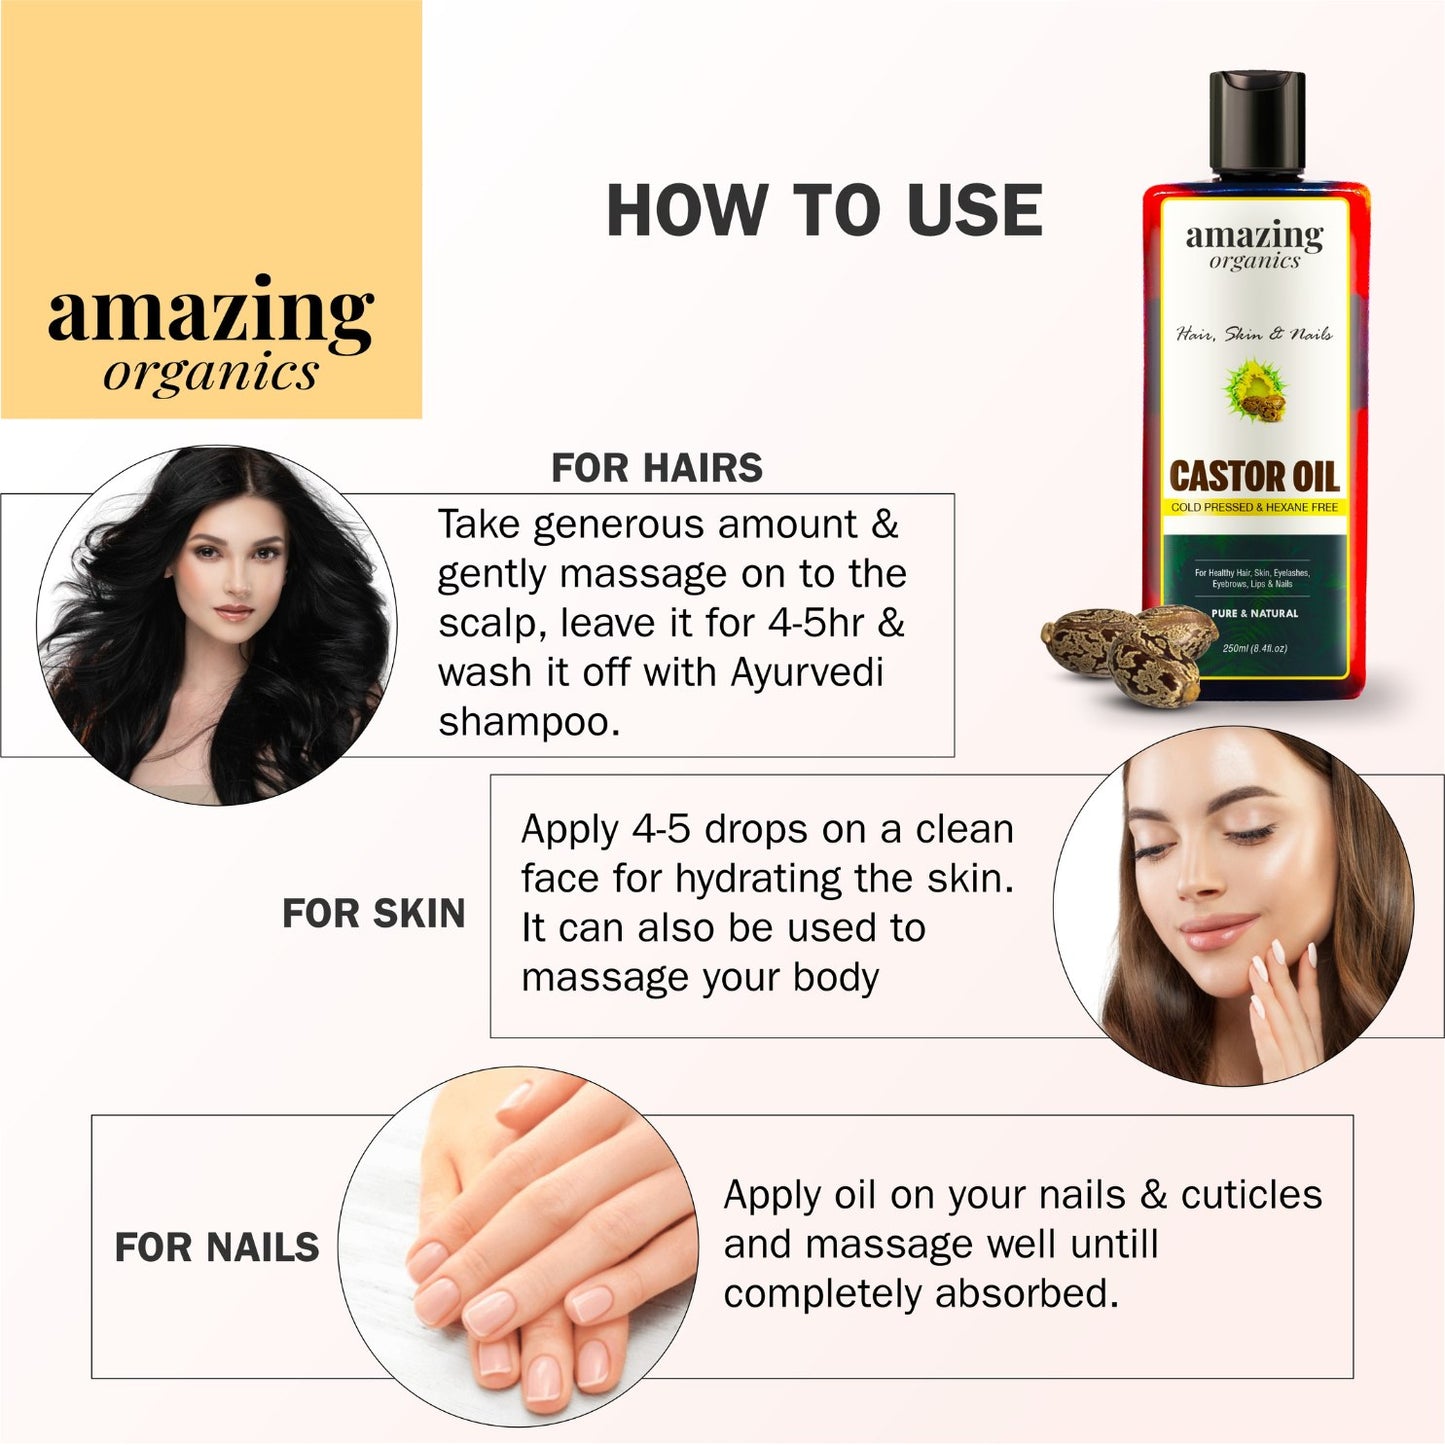 Castor Oil for Hair,  Skin & Nails